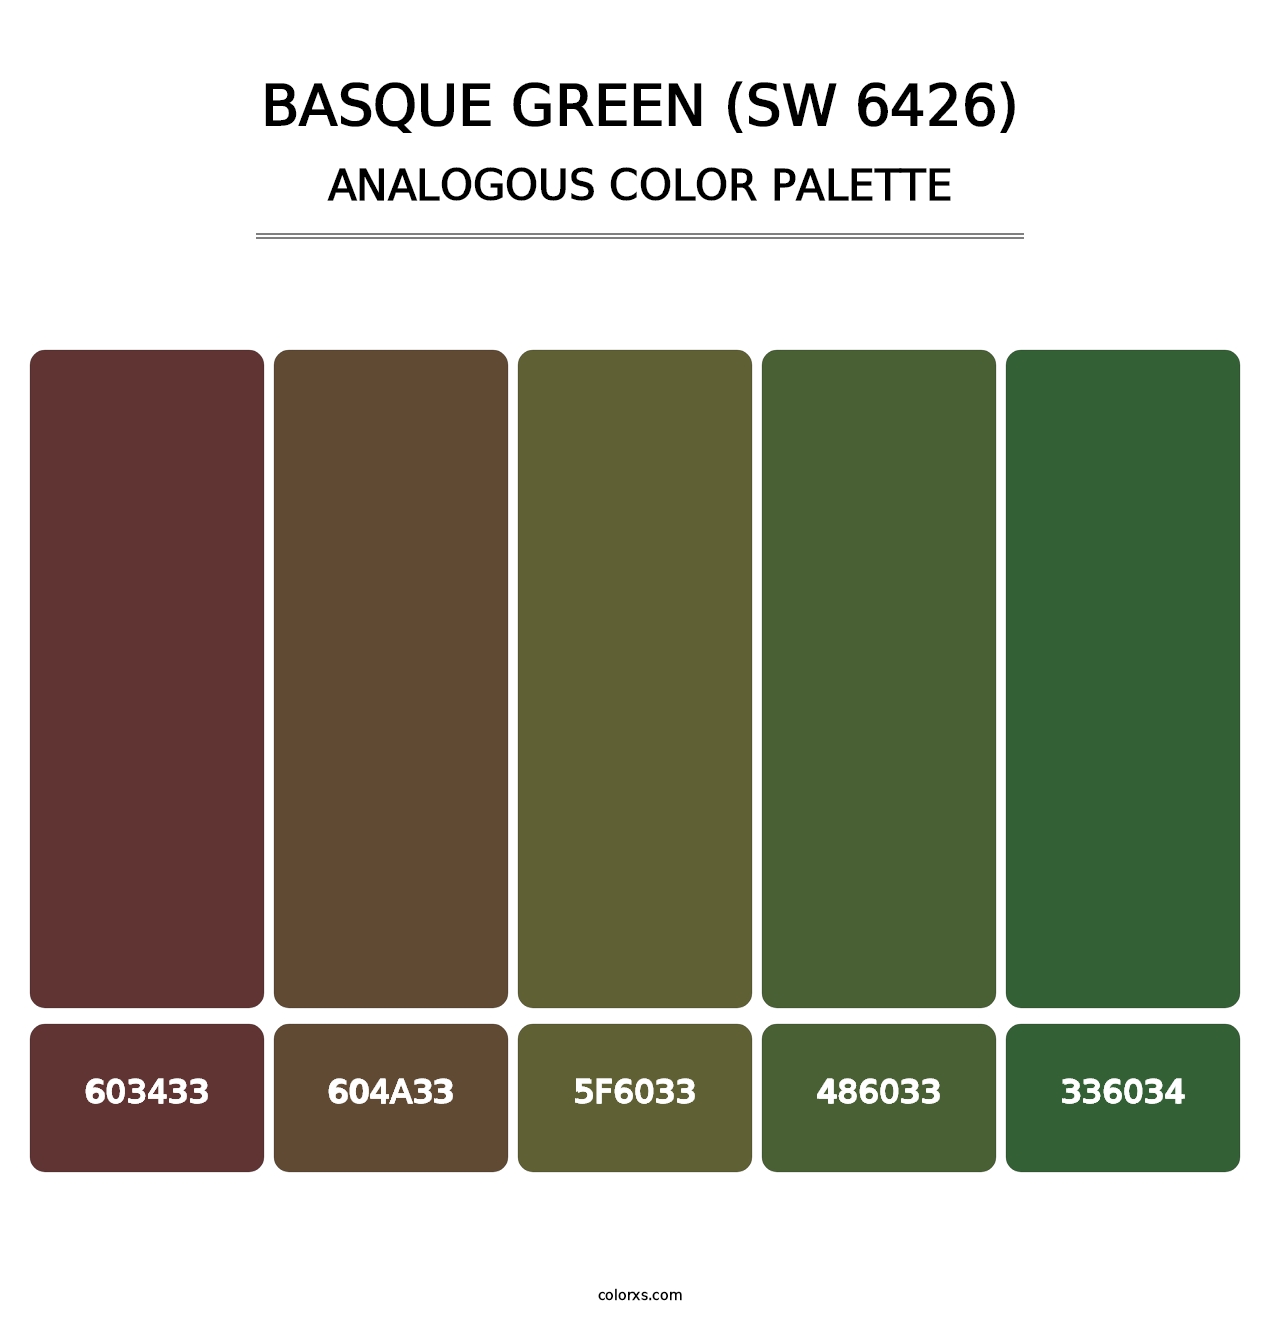 Basque Green (SW 6426) - Analogous Color Palette